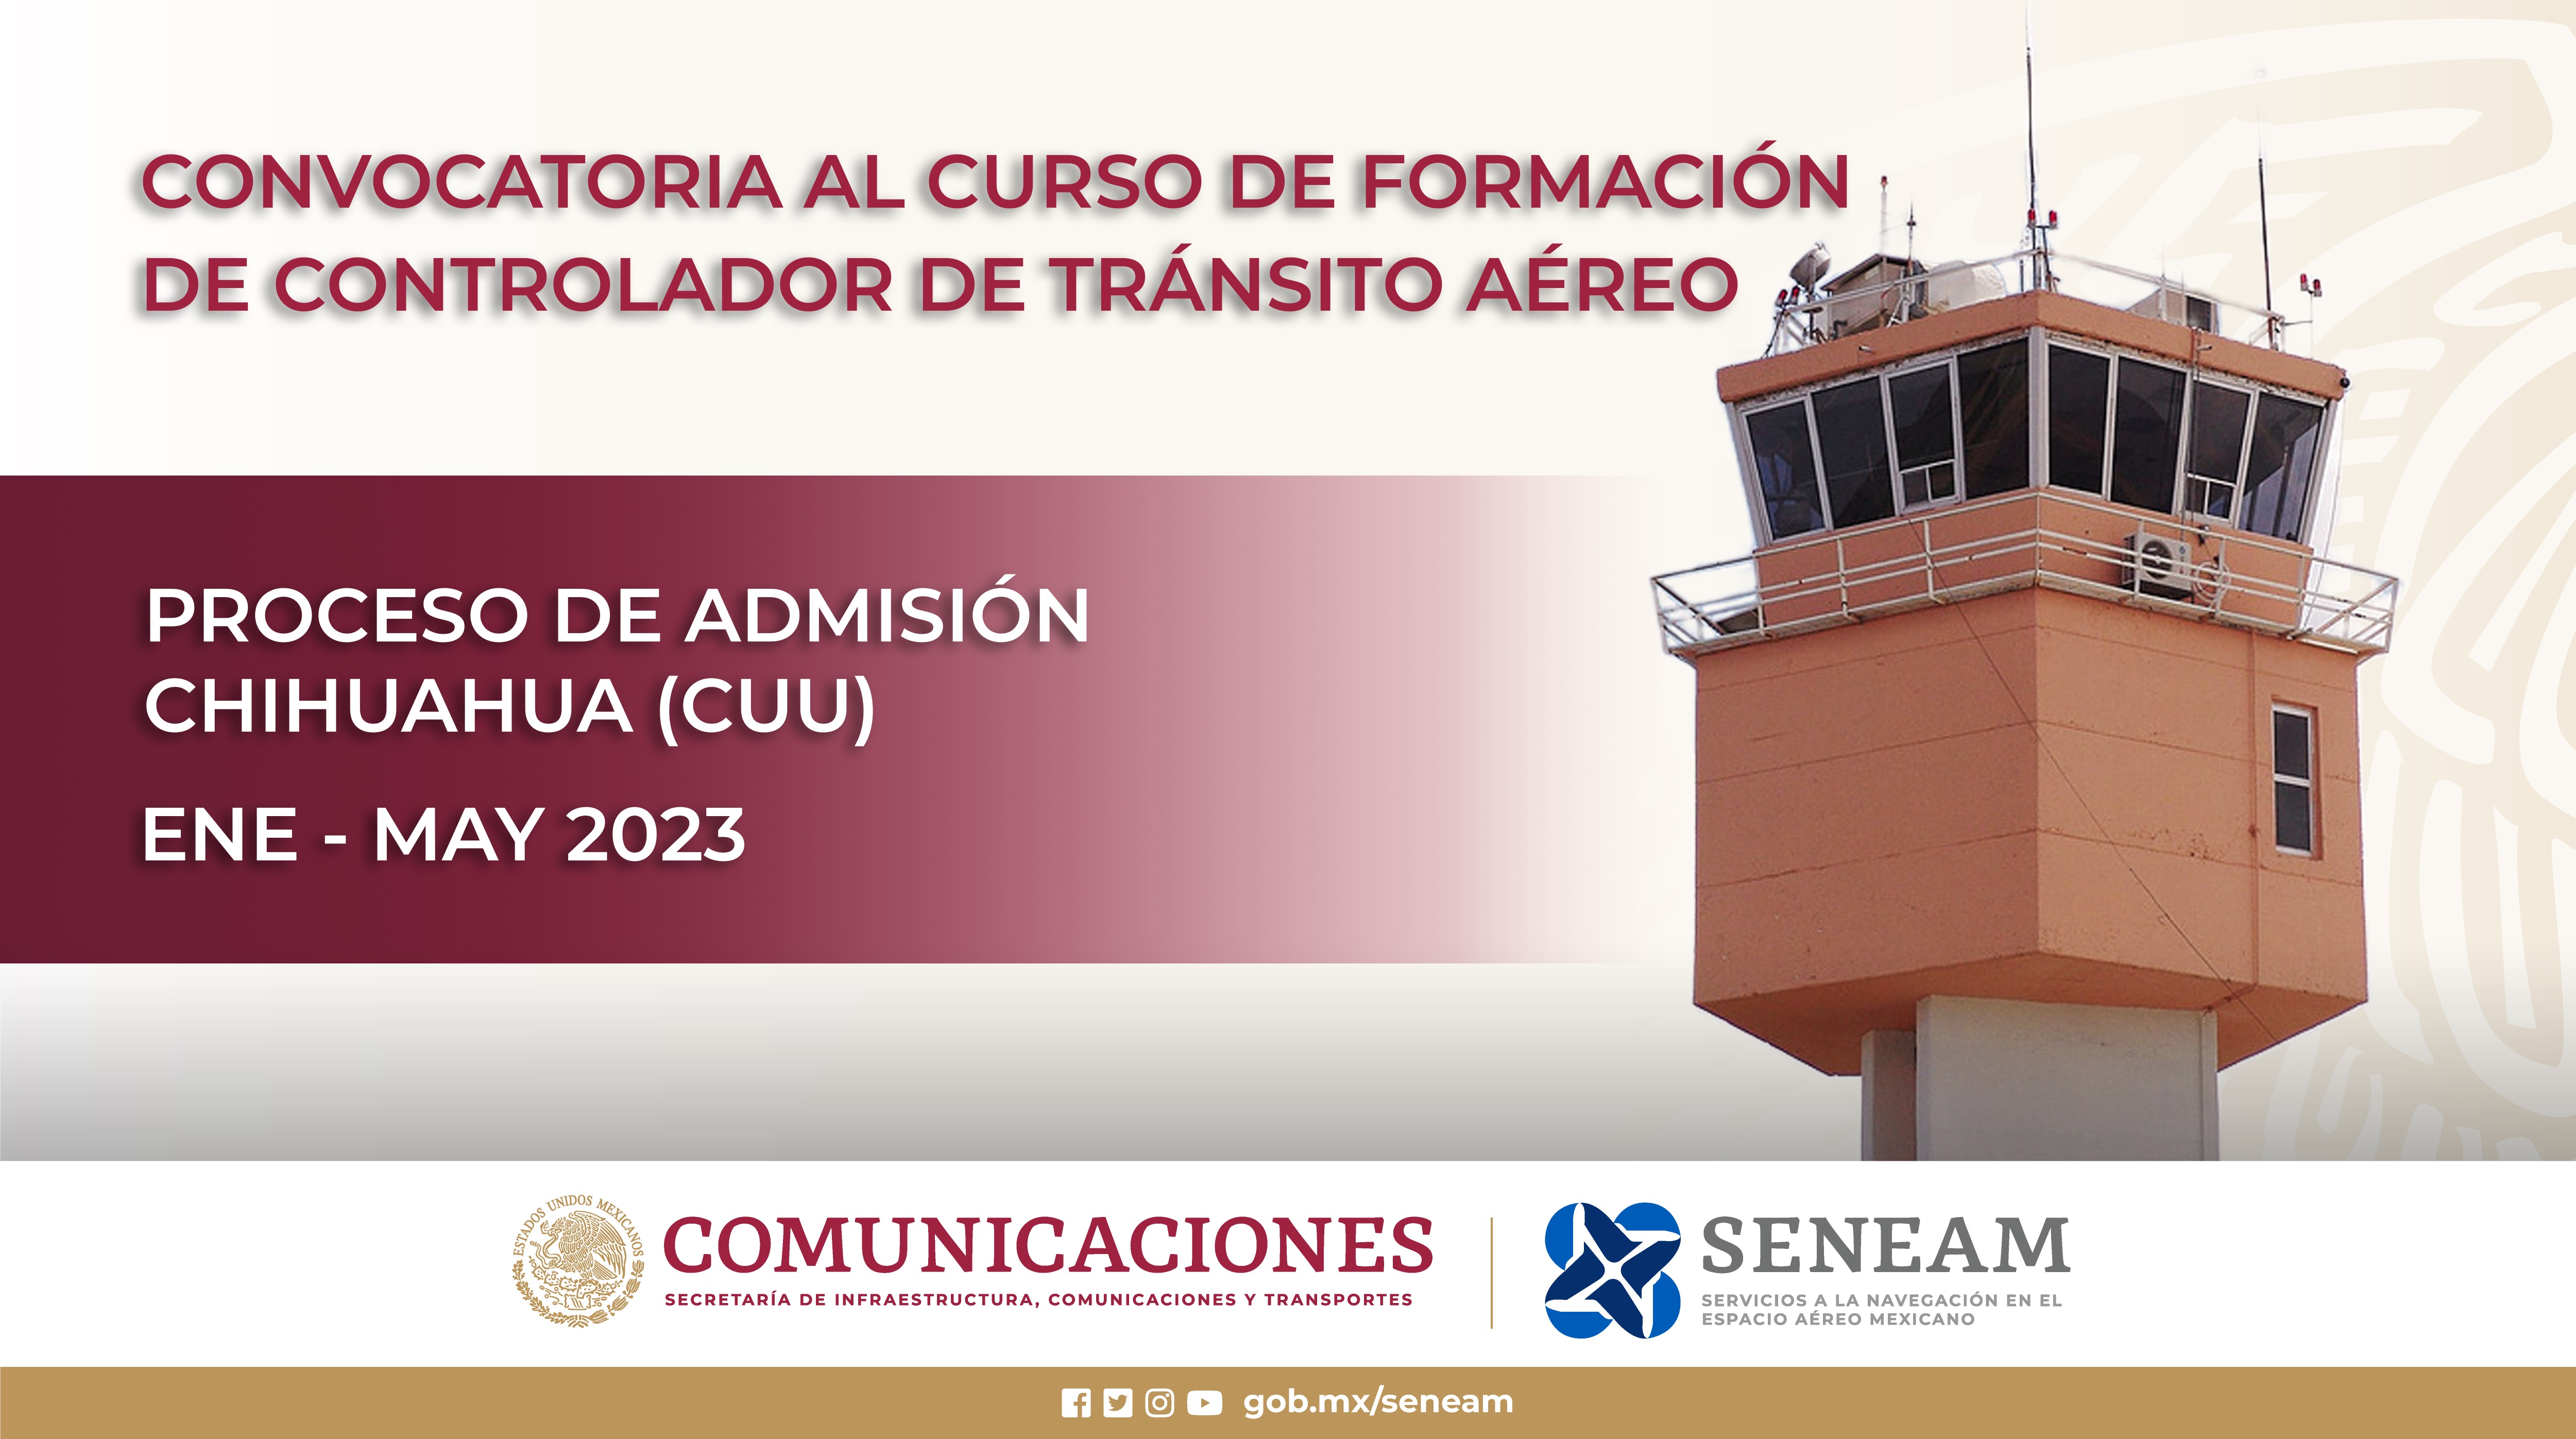 Convocatoria para el Curso de Formación de Controlador de Tránsito Aéreo en Chihuahua, Chih. (CUU) 2023-2025